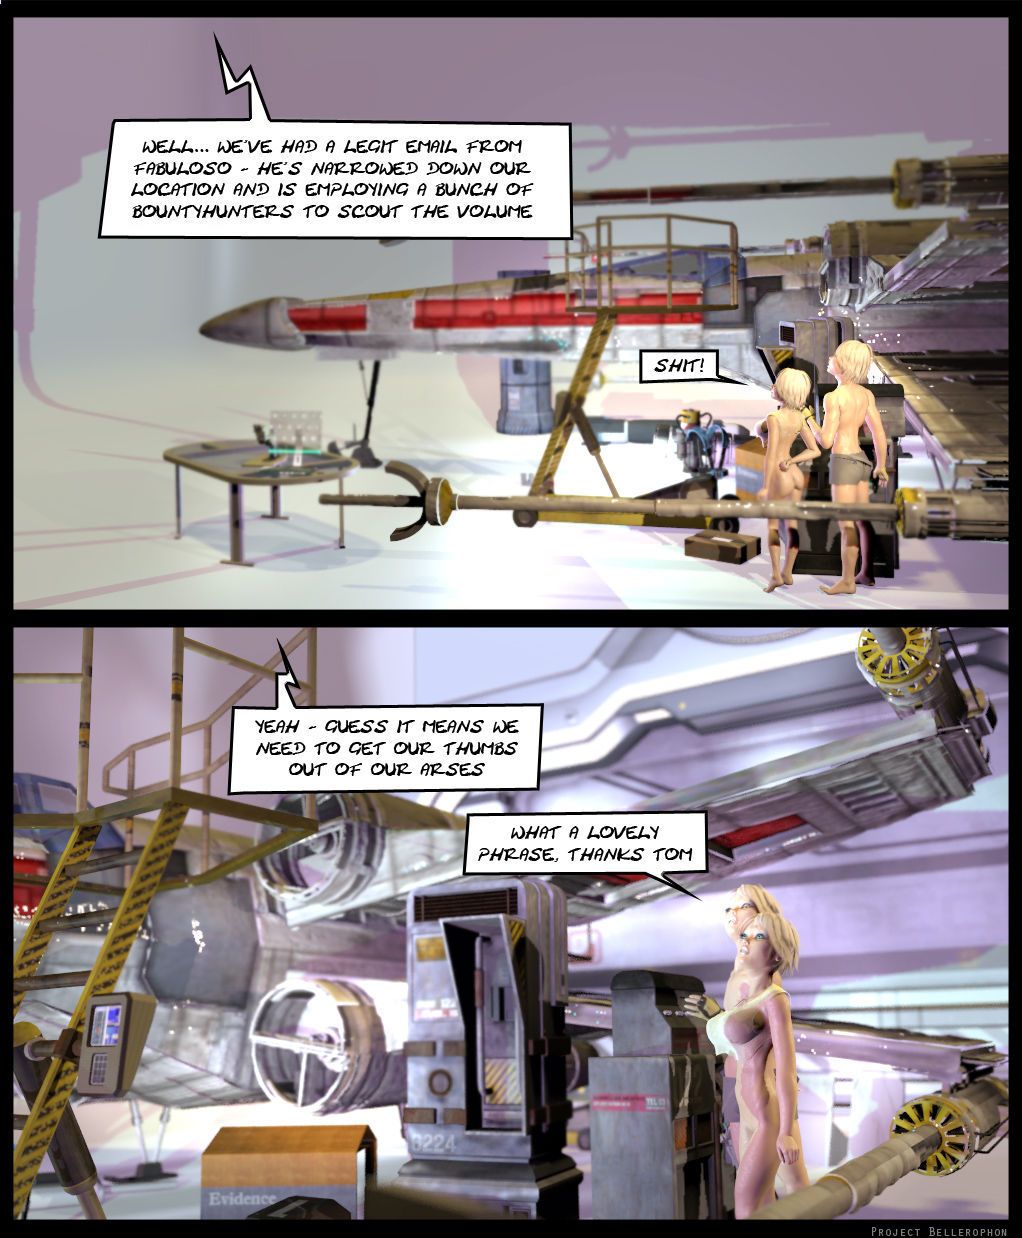 プロジェクト bellerophon コミック 16: bum 対応 - 部分 3